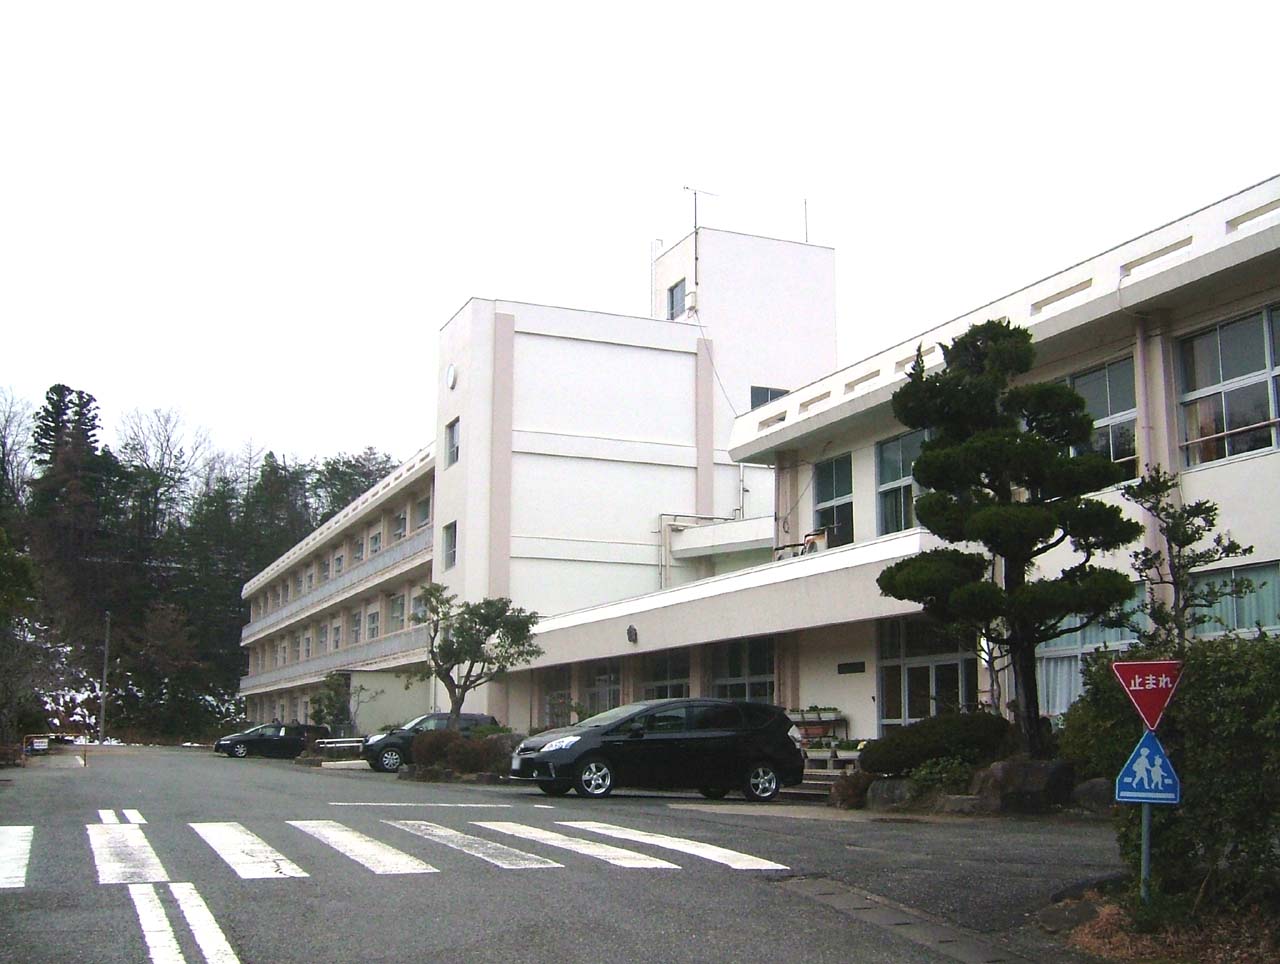 Primary school. Toyooka City Gosho to elementary school (elementary school) 1616m